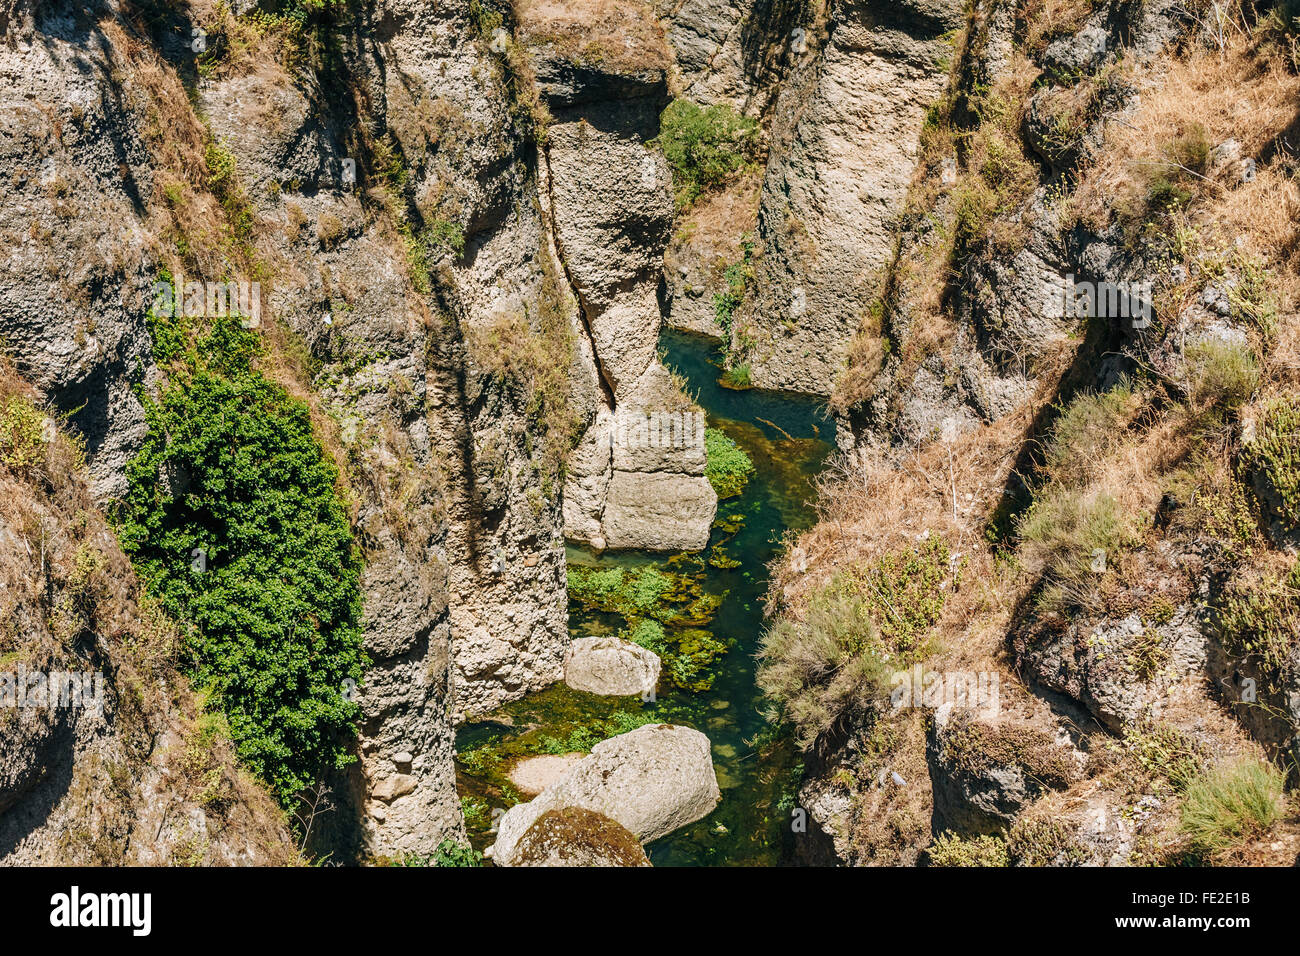 Tajo de Ronda Gorge, au bas de laquelle se trouve à une profondeur de 100 mètres, le fleuve rio Guadalevin. Ronda, Province de Malaga, Espagne. Banque D'Images